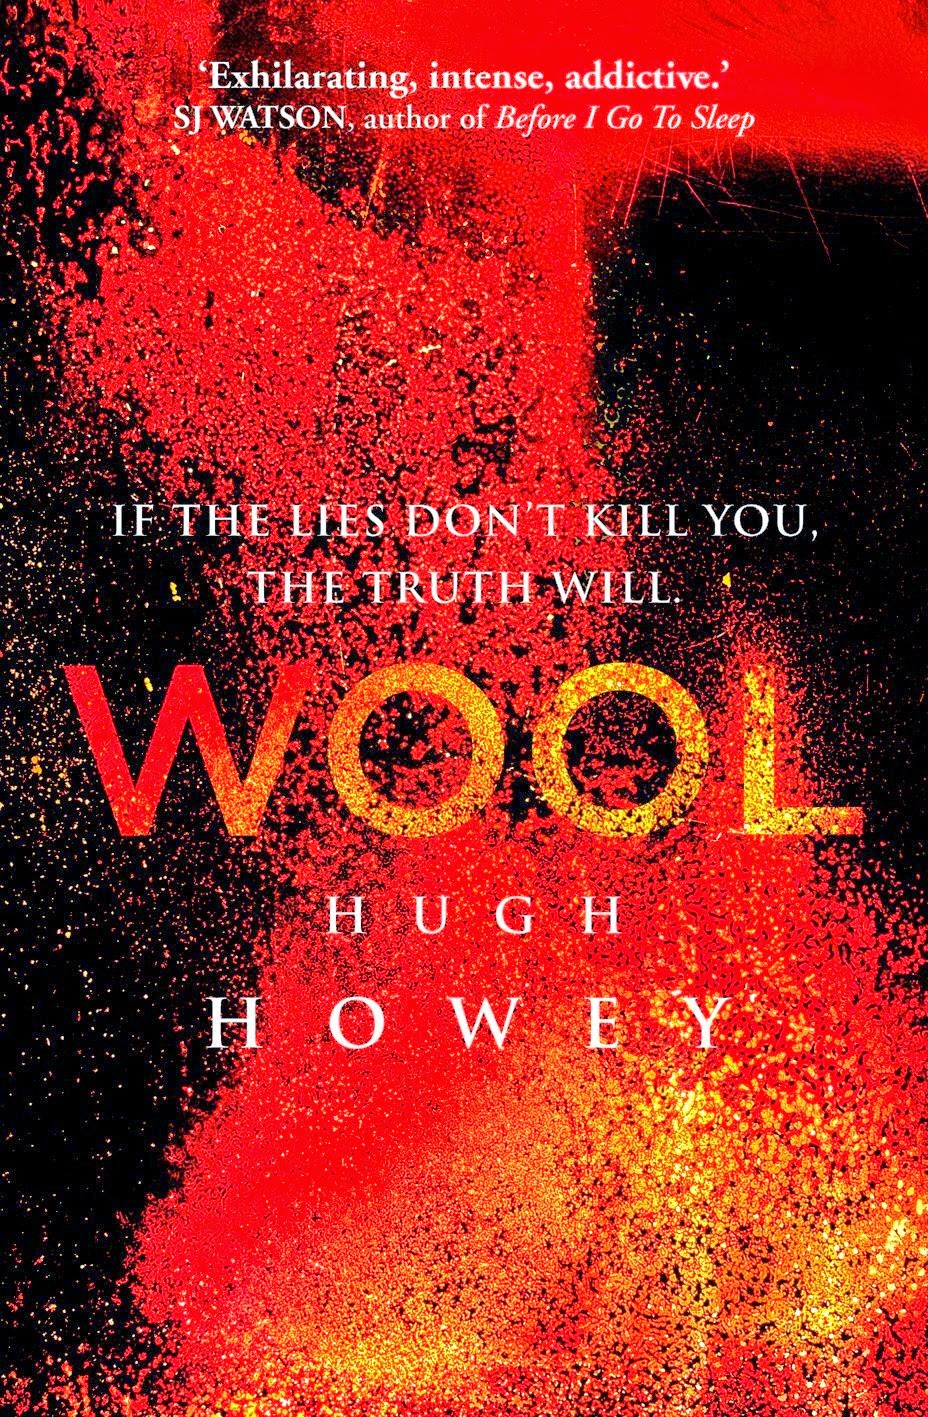 wool book review reddit